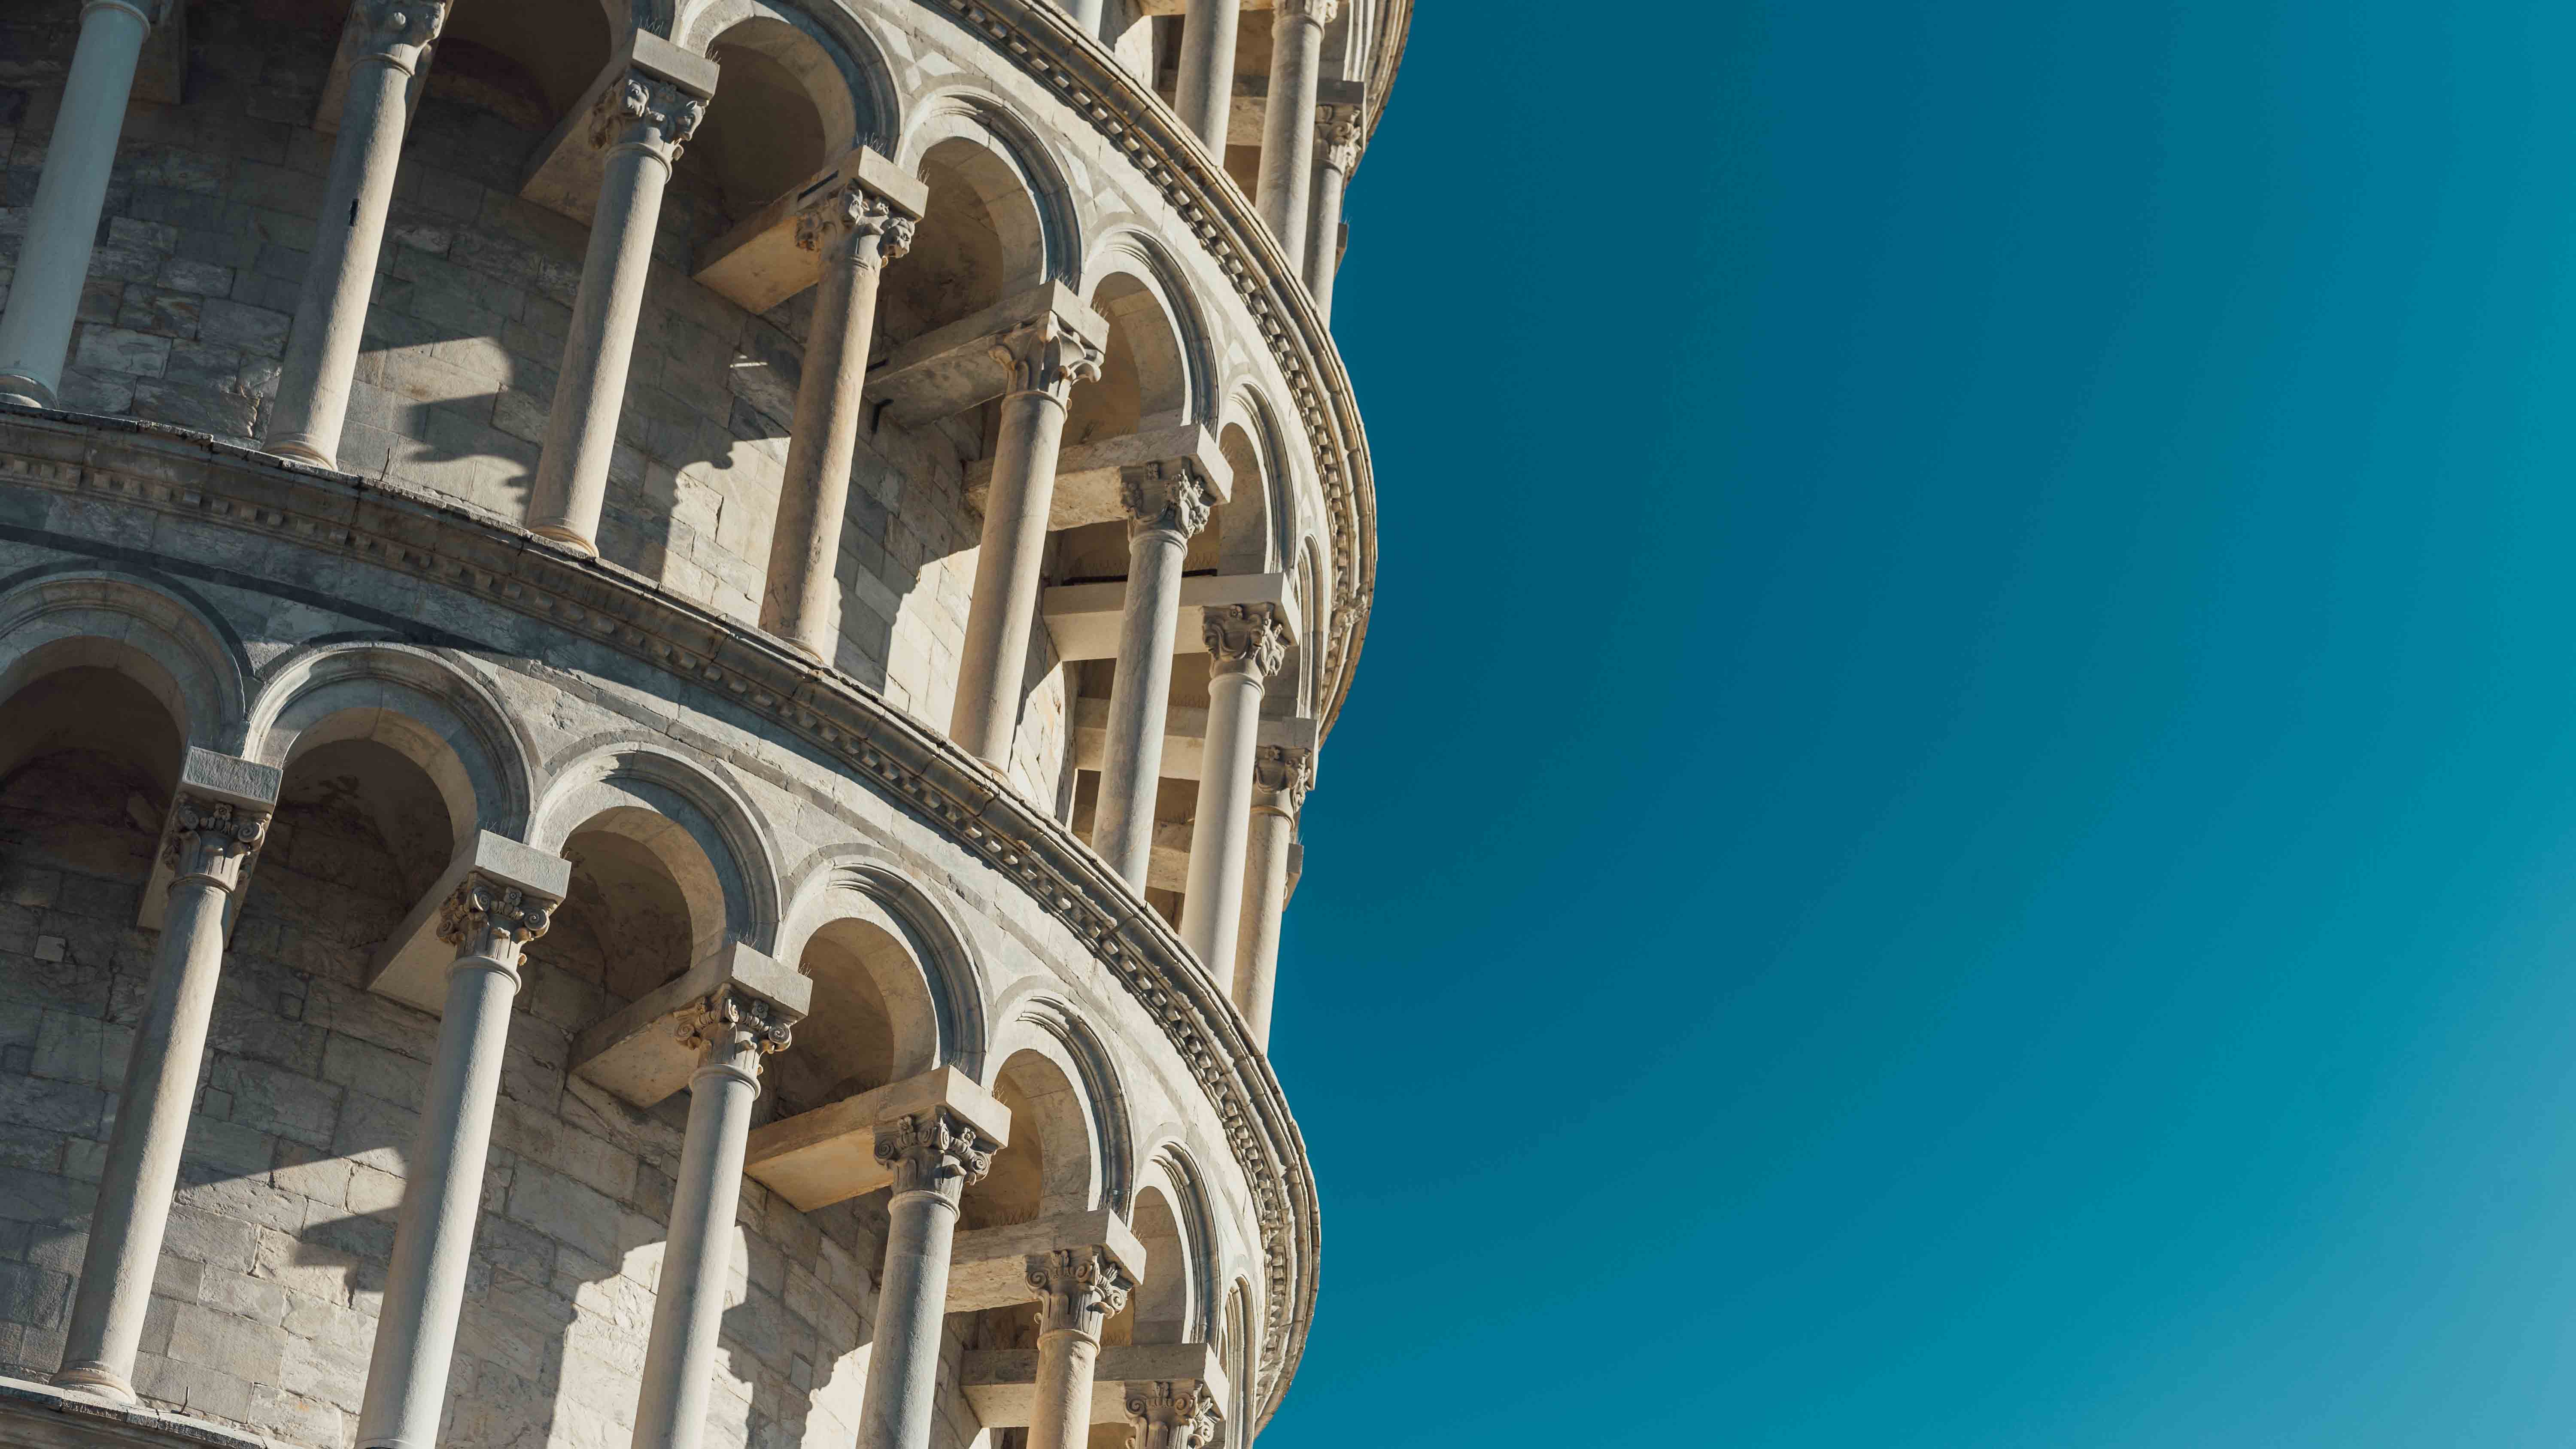 Pisa sito unesco toscana